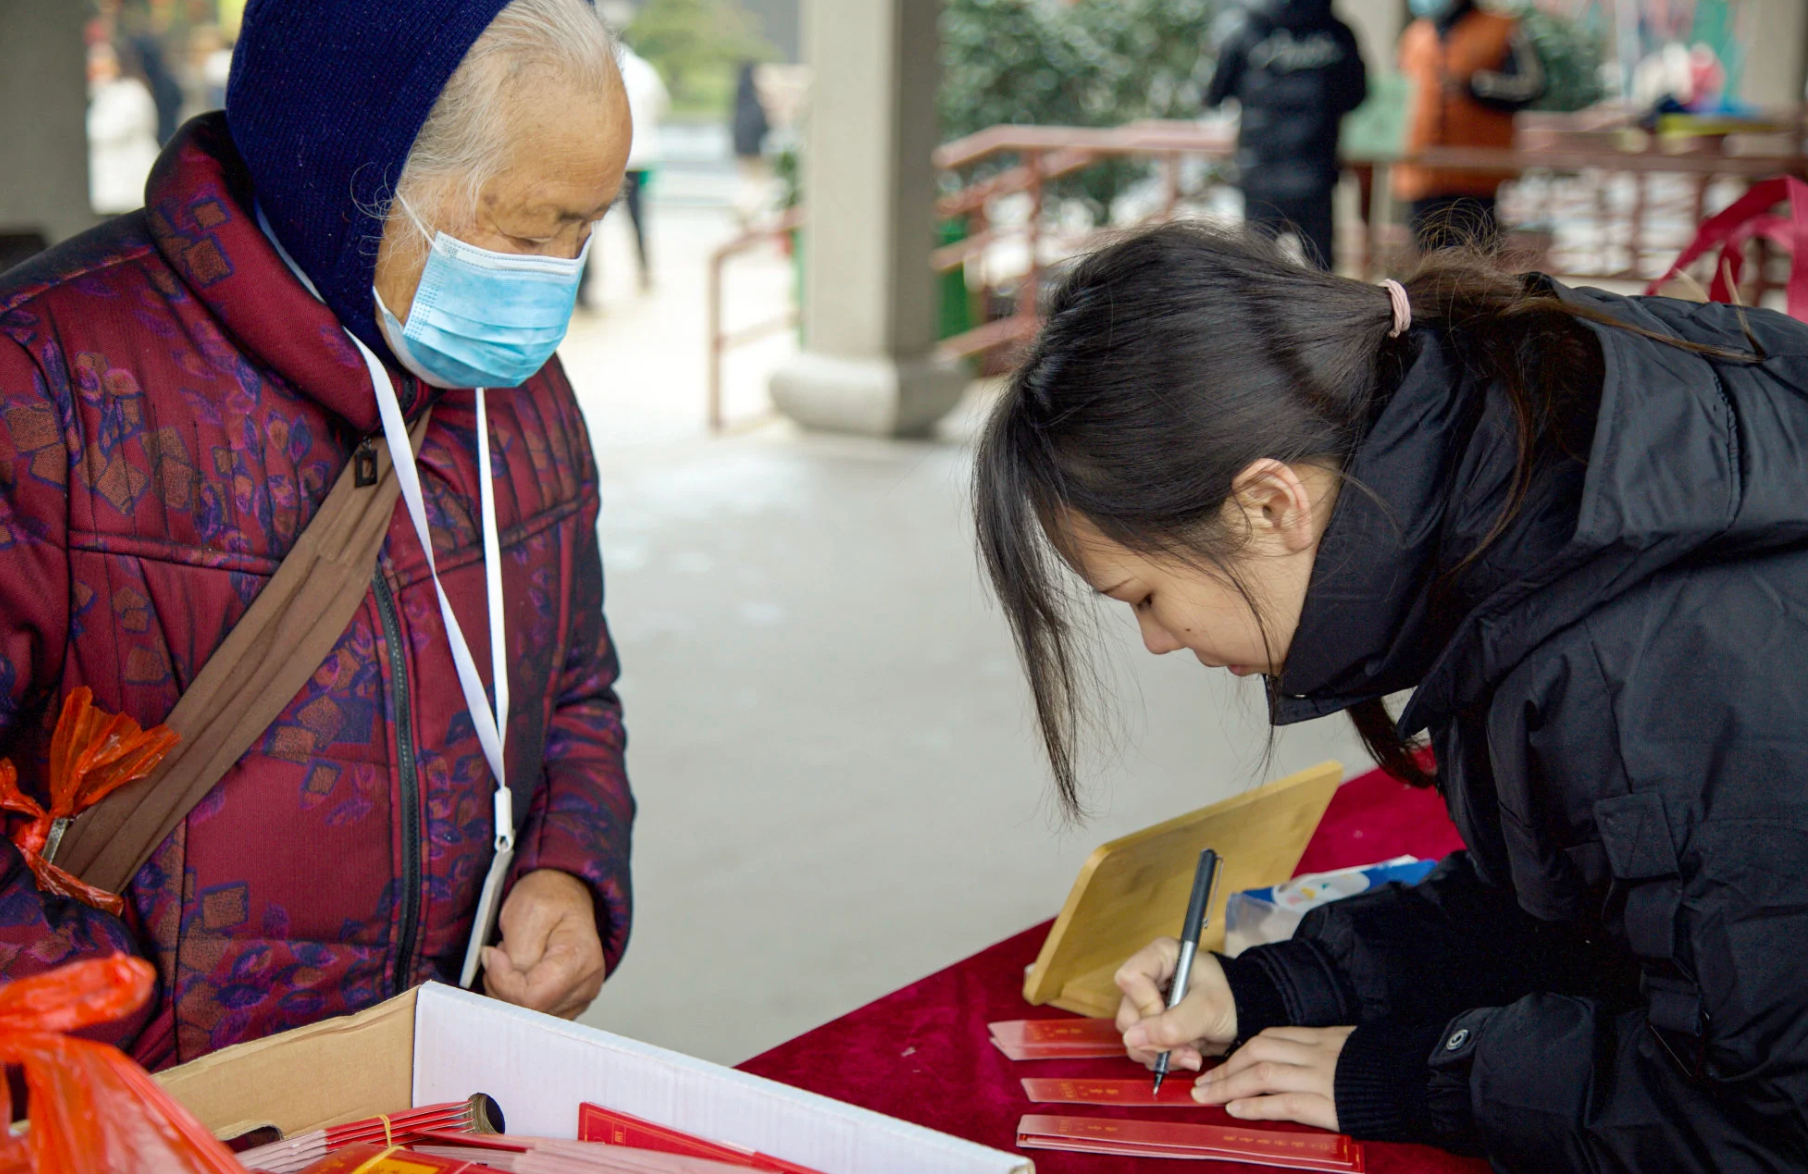 Trung Quốc: Người trẻ kiệt sức, quyết định bỏ việc, ồ ạt kéo đến chùa ở trong vài tháng để tìm 'sự an yên' - Ảnh 1.